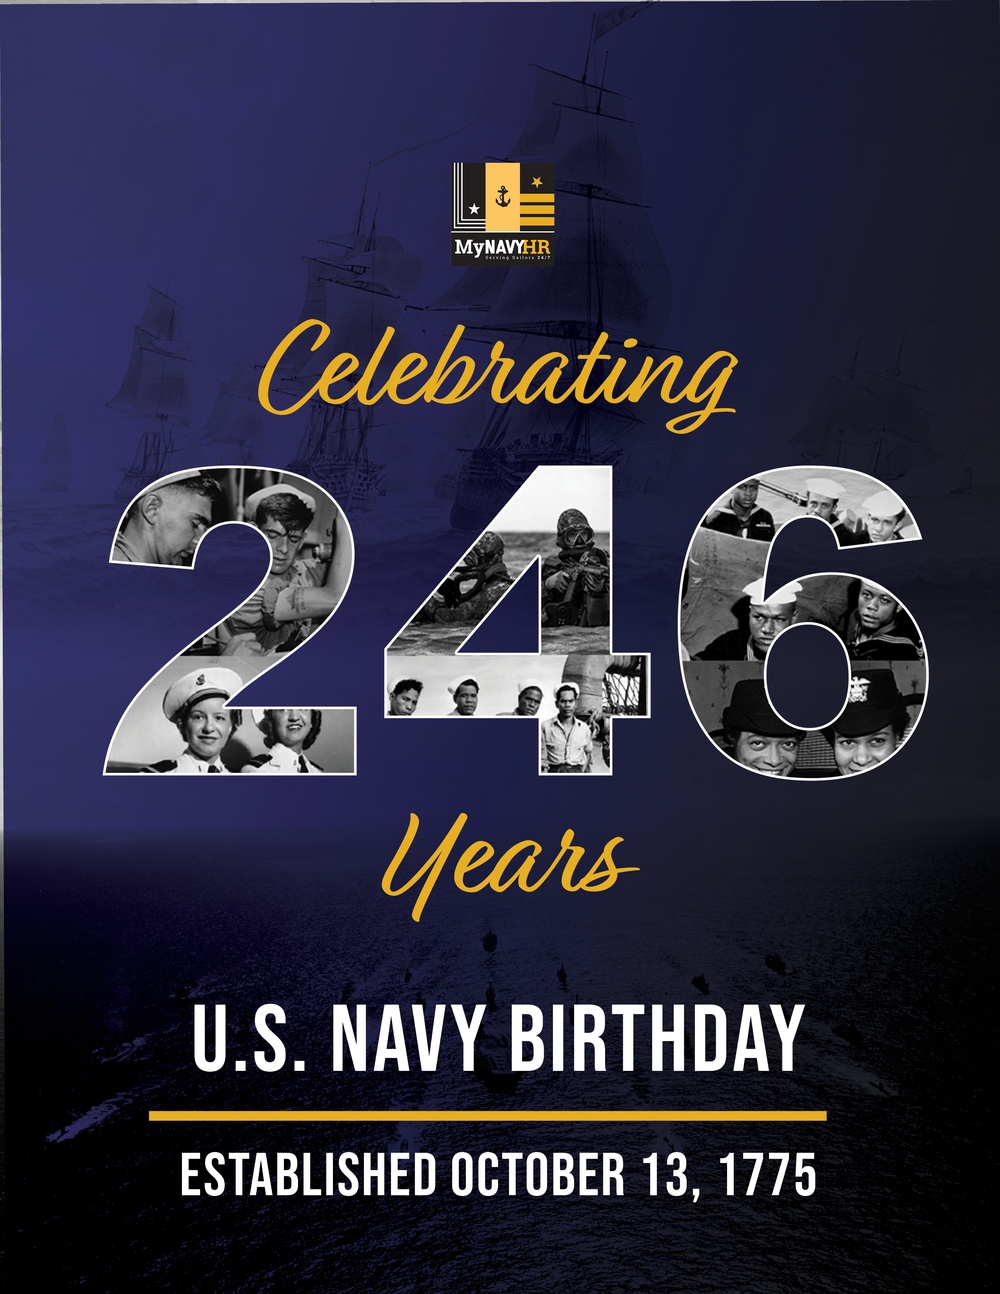 MyNavy HR Navy Birthday Graphic